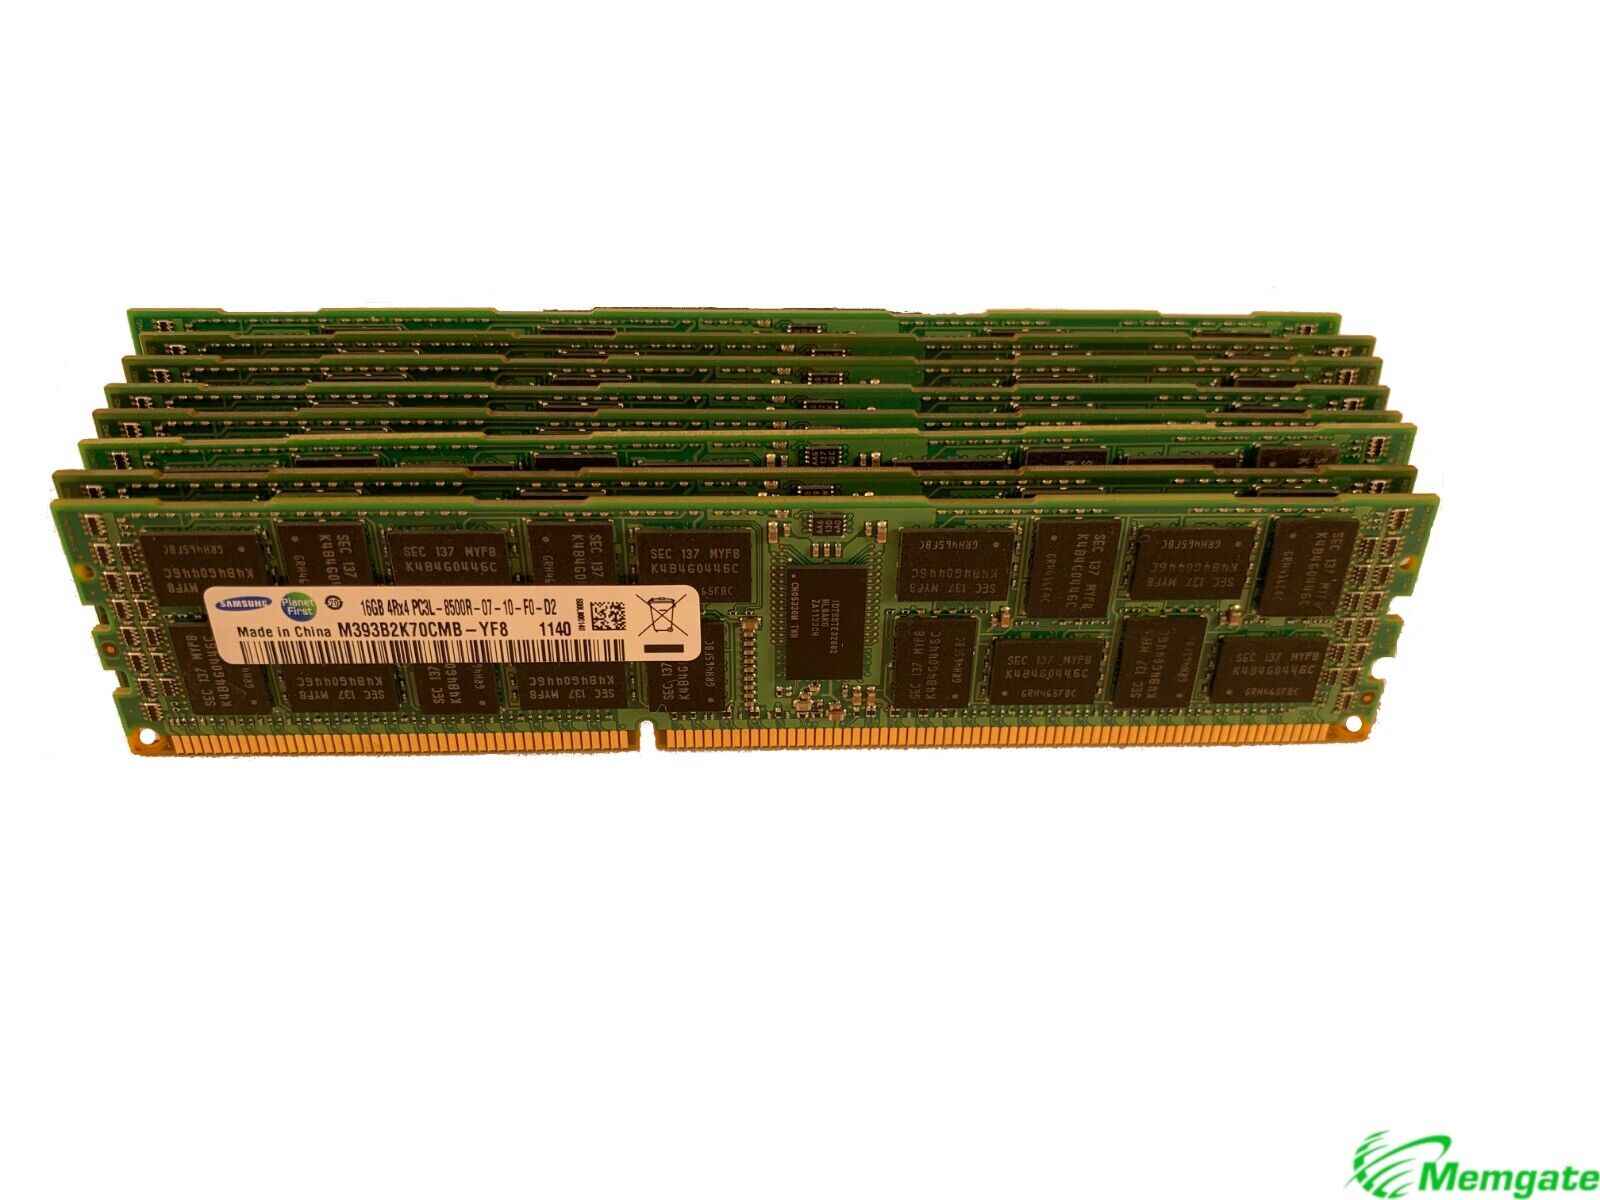 192GB (12x16GB) DDR3 PC3-8500R 4Rx4 ECC Reg Memory RAM for HP DL380 G6 DL380 G7